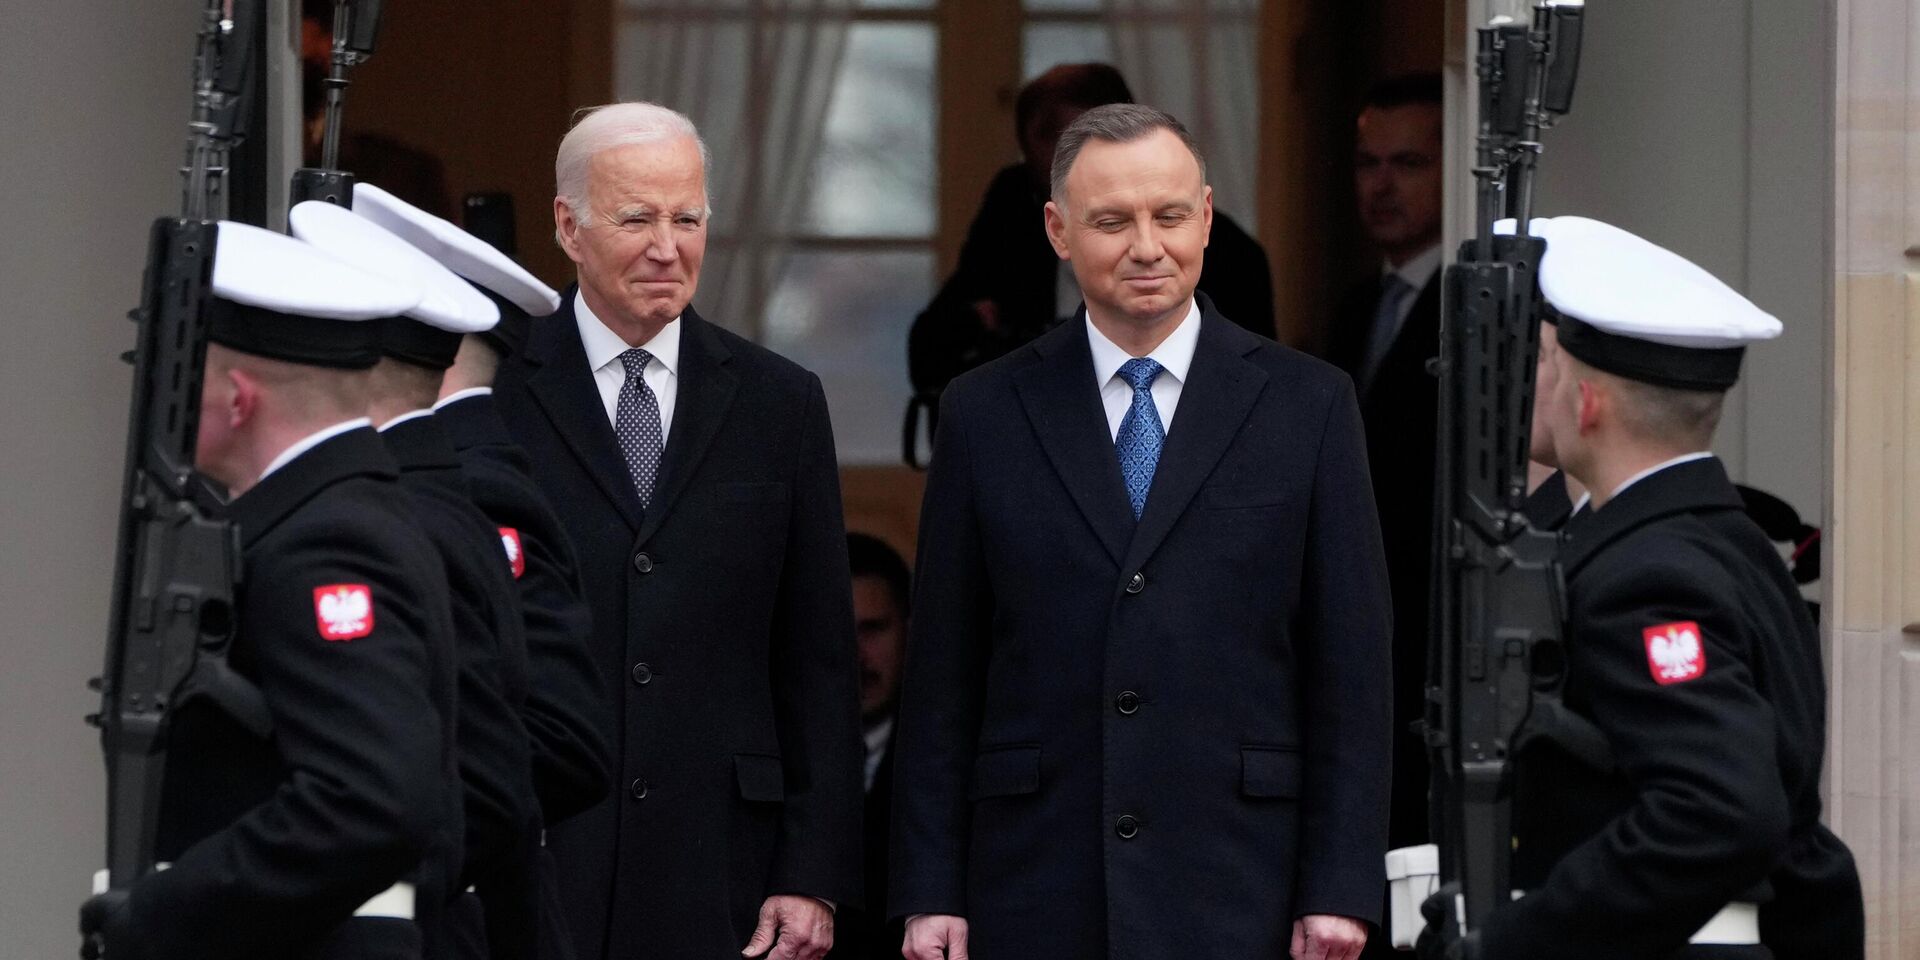 Президент Польши Анджей Дуда и президент США Джо Байден в Варшаве, Польша. 21 февраля 2023 года - ИноСМИ, 1920, 01.03.2023